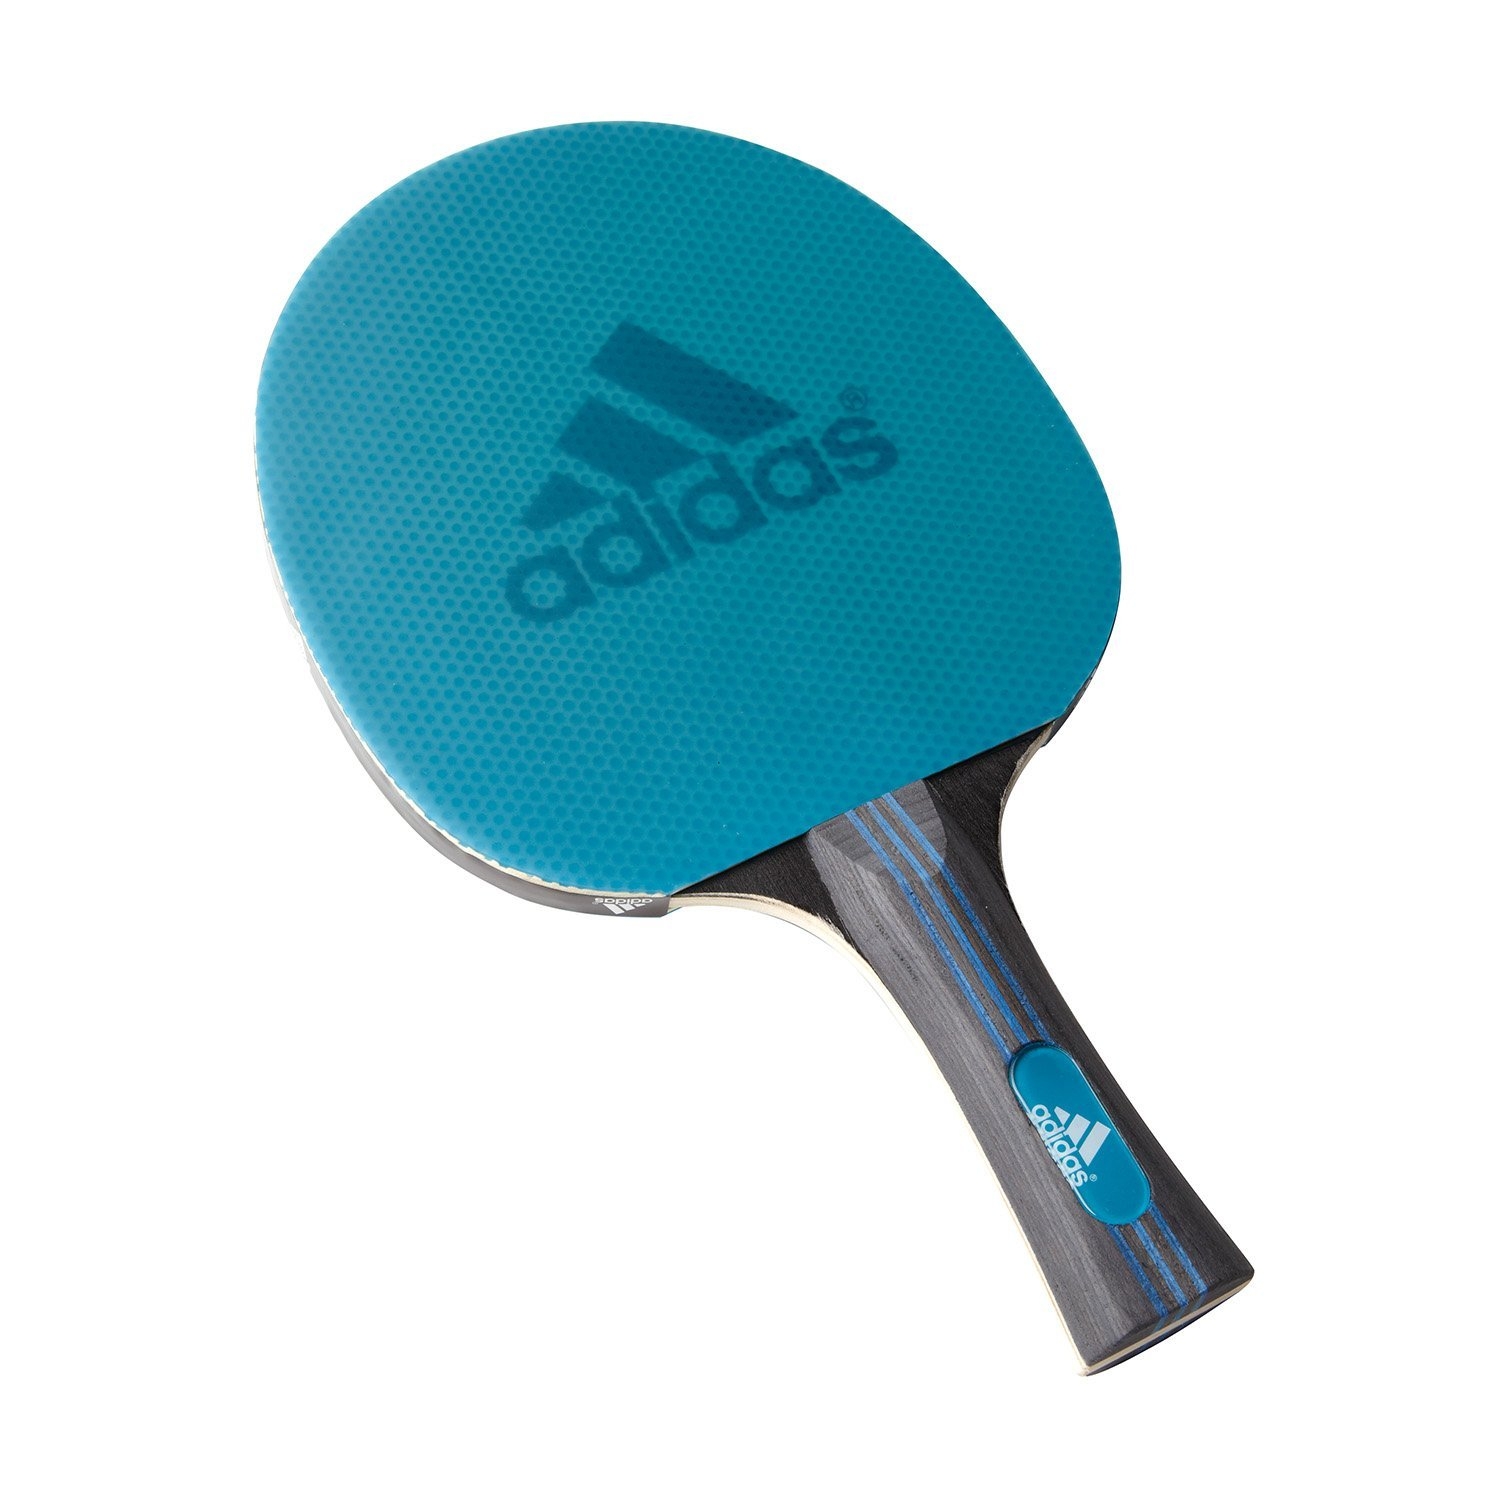 Ракетка для настольного тенниса купить в спб. Adidas Laser ракетка для настольного тенниса. Ракетка адидас для настольного тенниса. Ракетка адидас для настольного тенниса Vigor 120. Ракетка для пинг понга adidas.